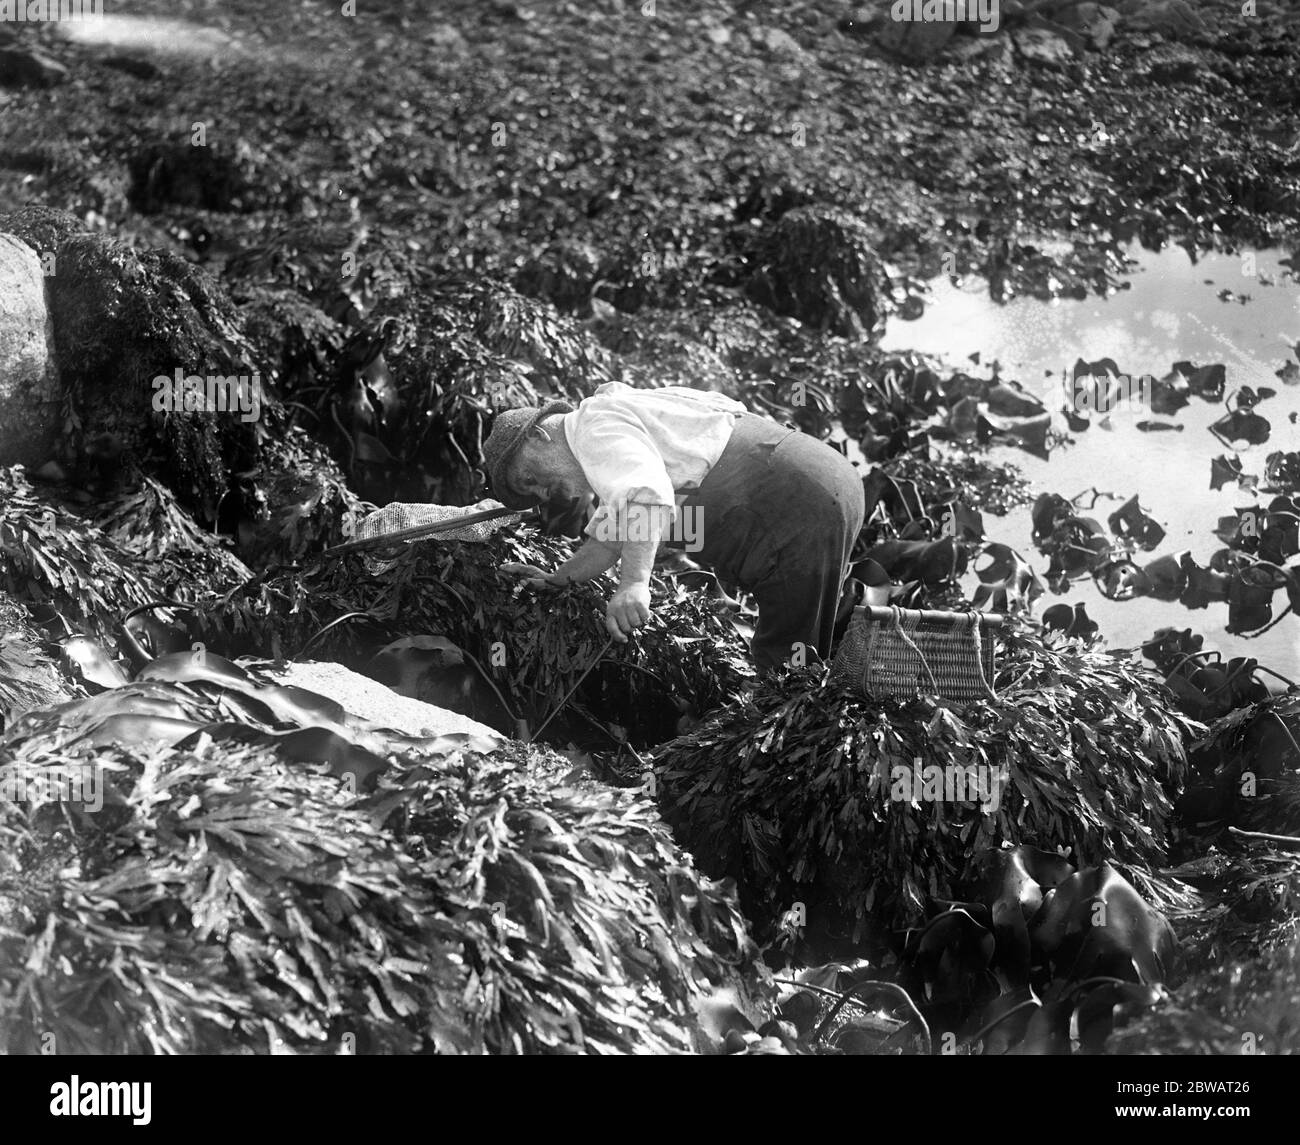 Ein Mann, der mit seinem Netz auf den Kanalinseln an der Küste nach den Urmoren oder Seeofern (Muscheln) fischt. Oktober 1920 Stockfoto